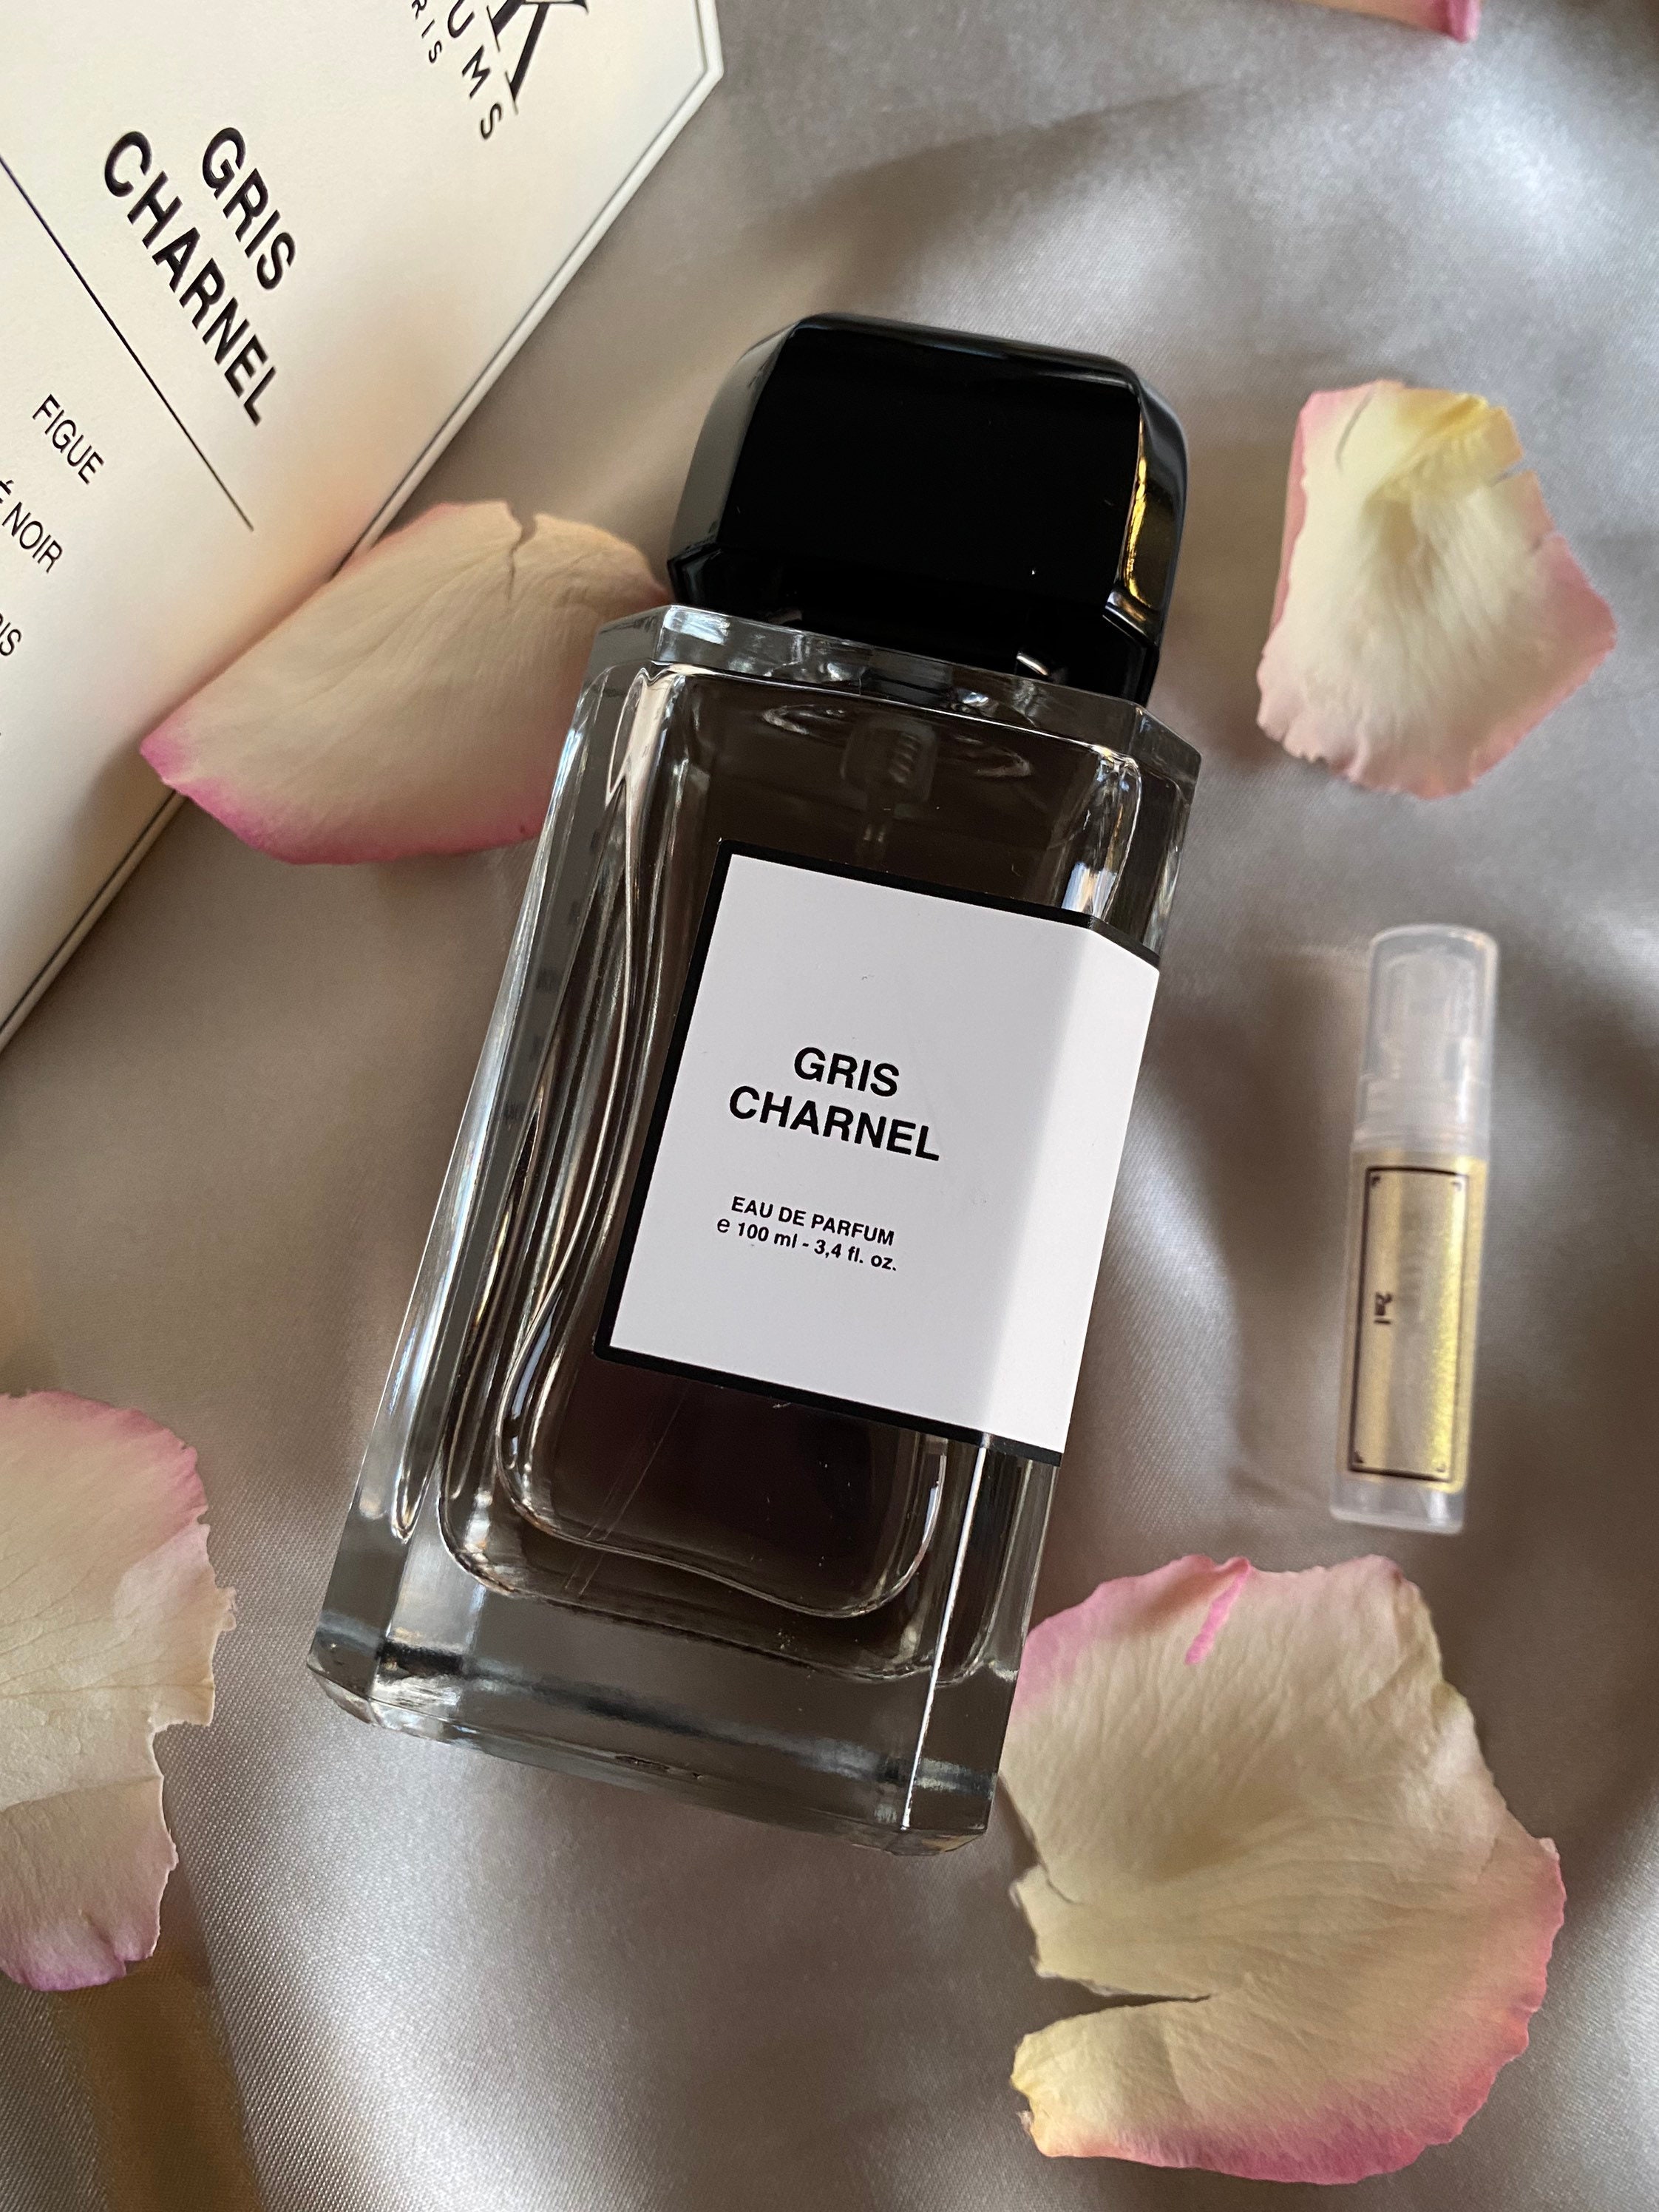 BDK Parfums Gris Charnel 